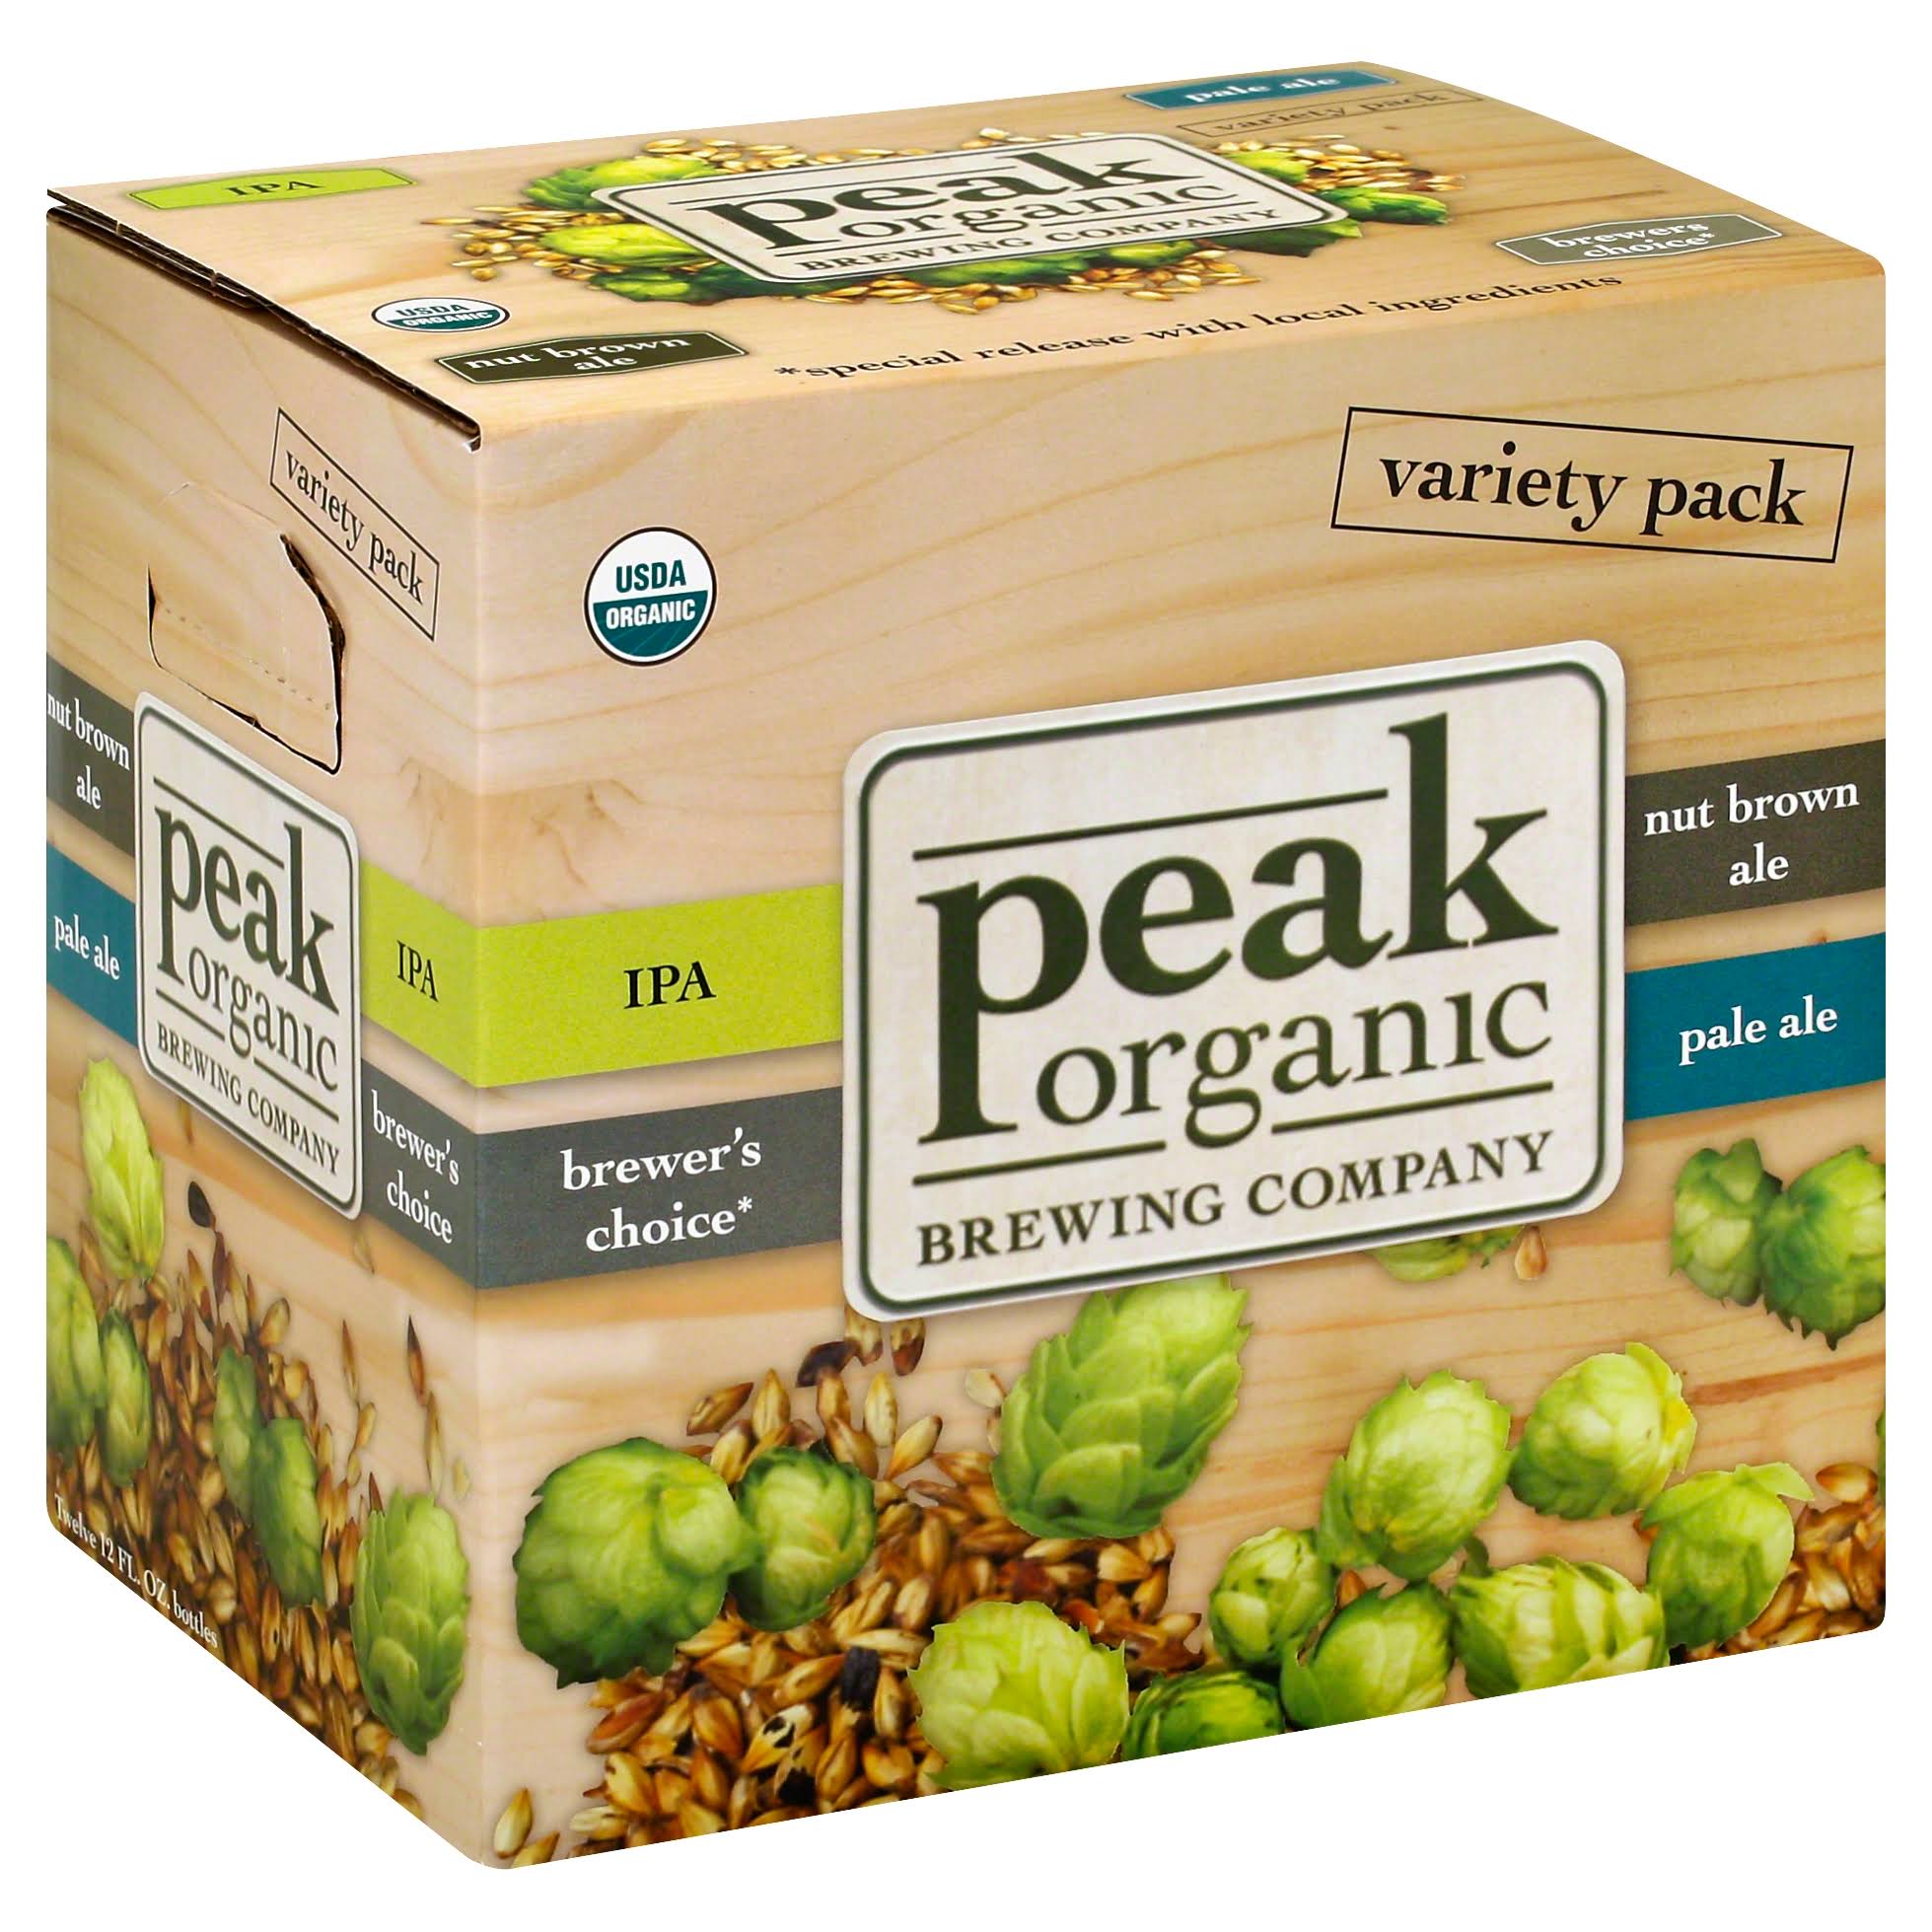 Peak Organic Beer Variety Pack - 12 pack, 12 fl oz bottles